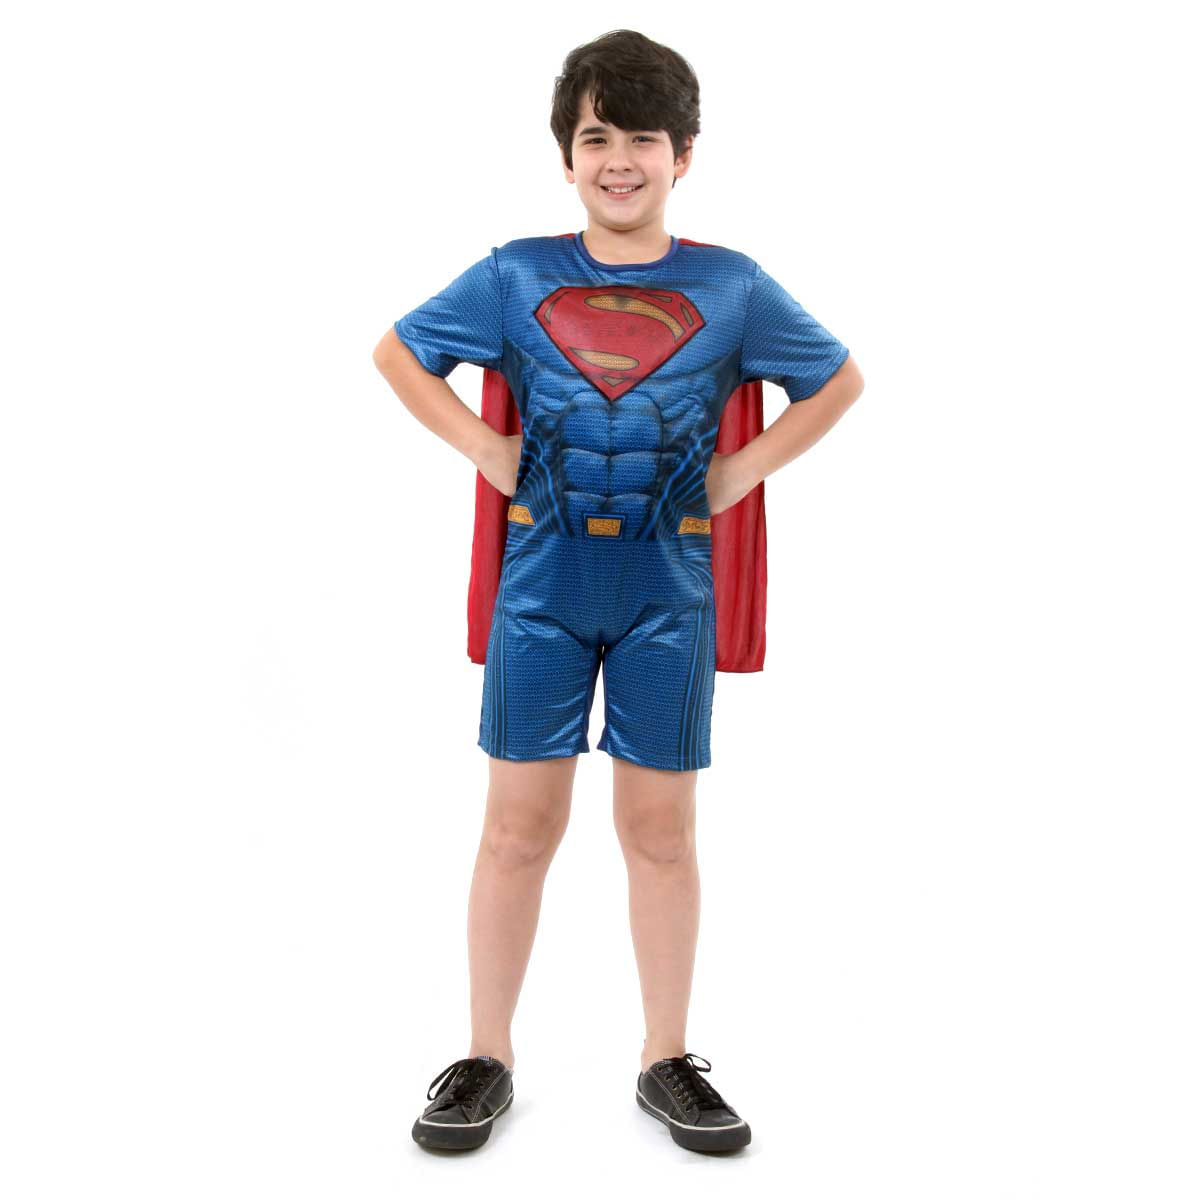 Fantasia Super Homem Infantil Curto com Musculatura - Liga da Justiça G